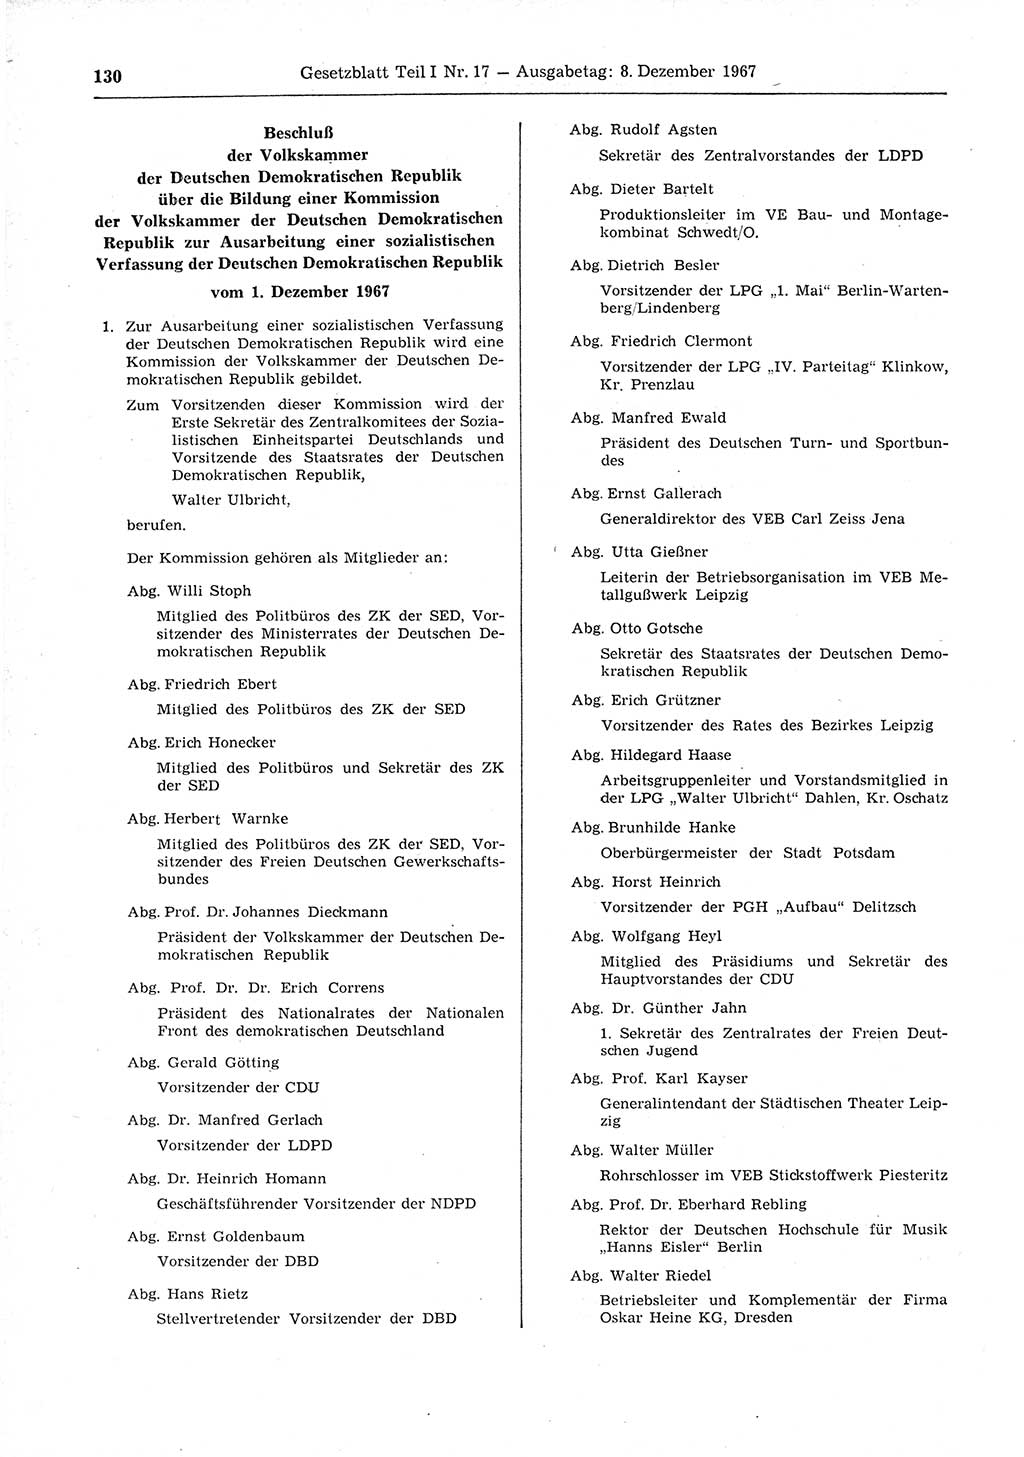 Gesetzblatt (GBl.) der Deutschen Demokratischen Republik (DDR) Teil Ⅰ 1967, Seite 130 (GBl. DDR Ⅰ 1967, S. 130)